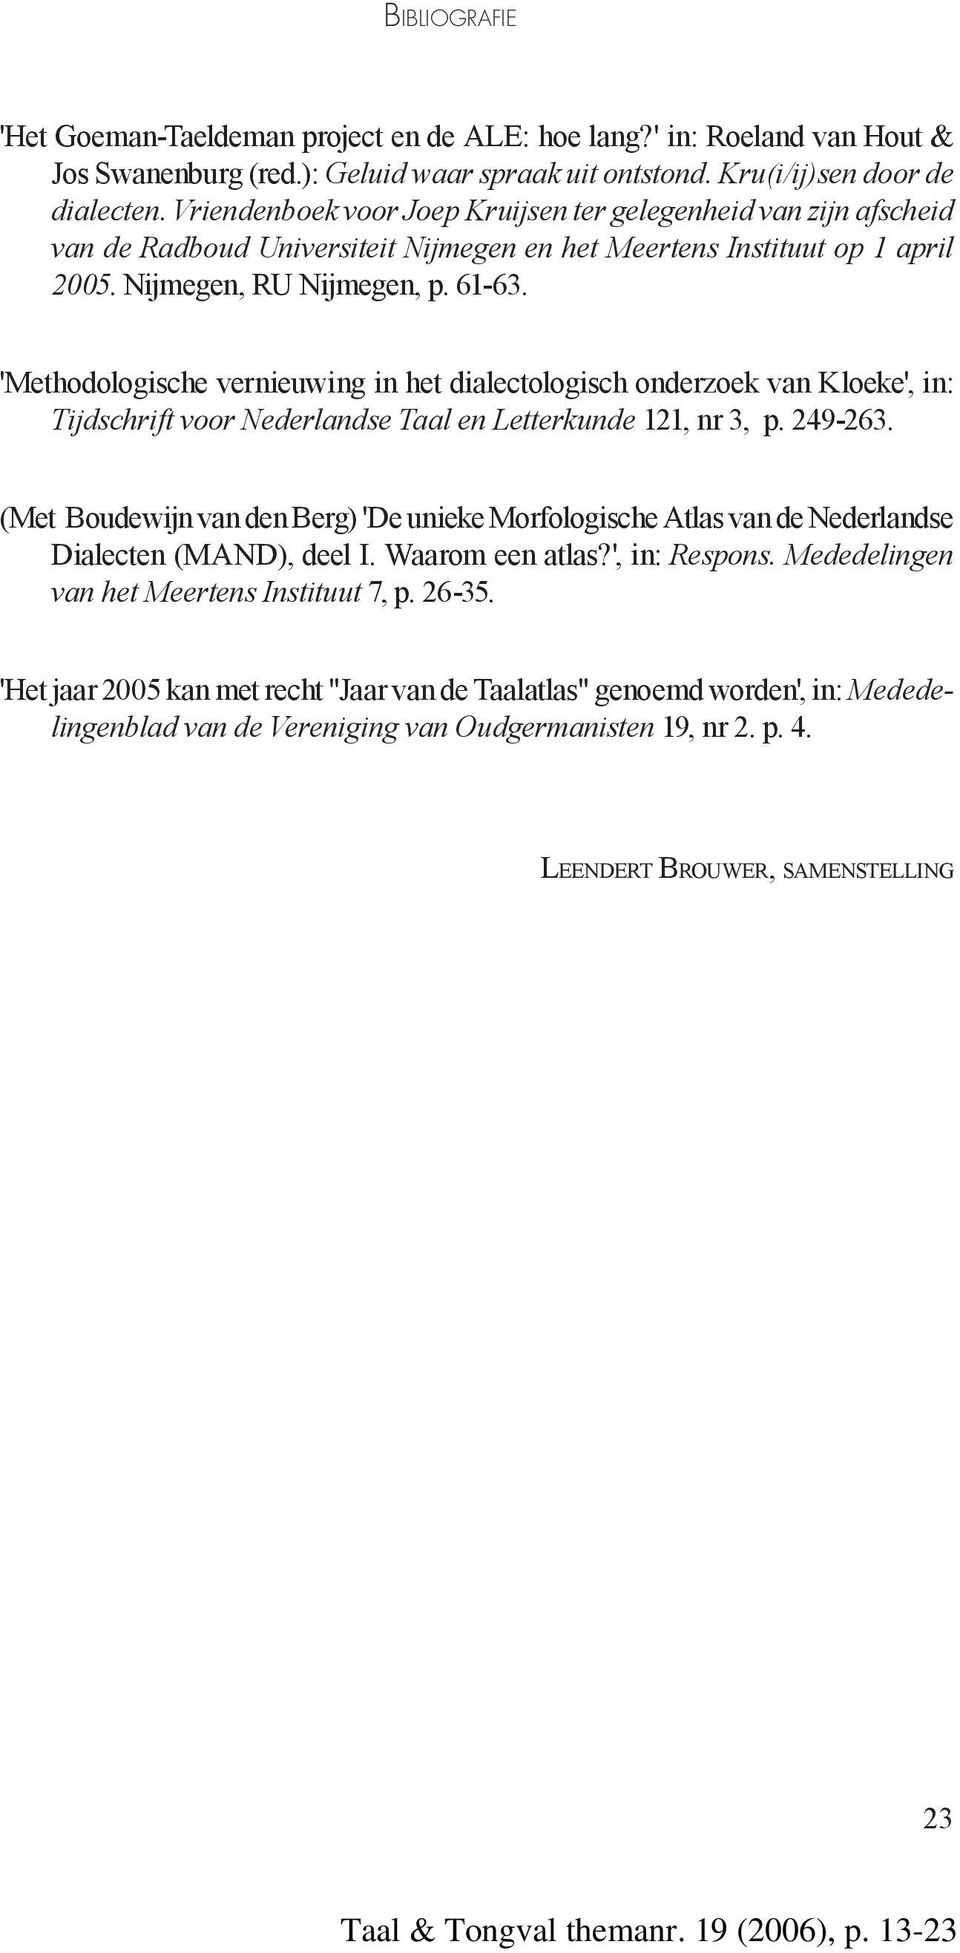 'Methodologische vernieuwing in het dialectologisch onderzoek van Kloeke', in: Tijdschrift voor Nederlandse Taal en Letterkunde 121, nr 3, p. 249-263.